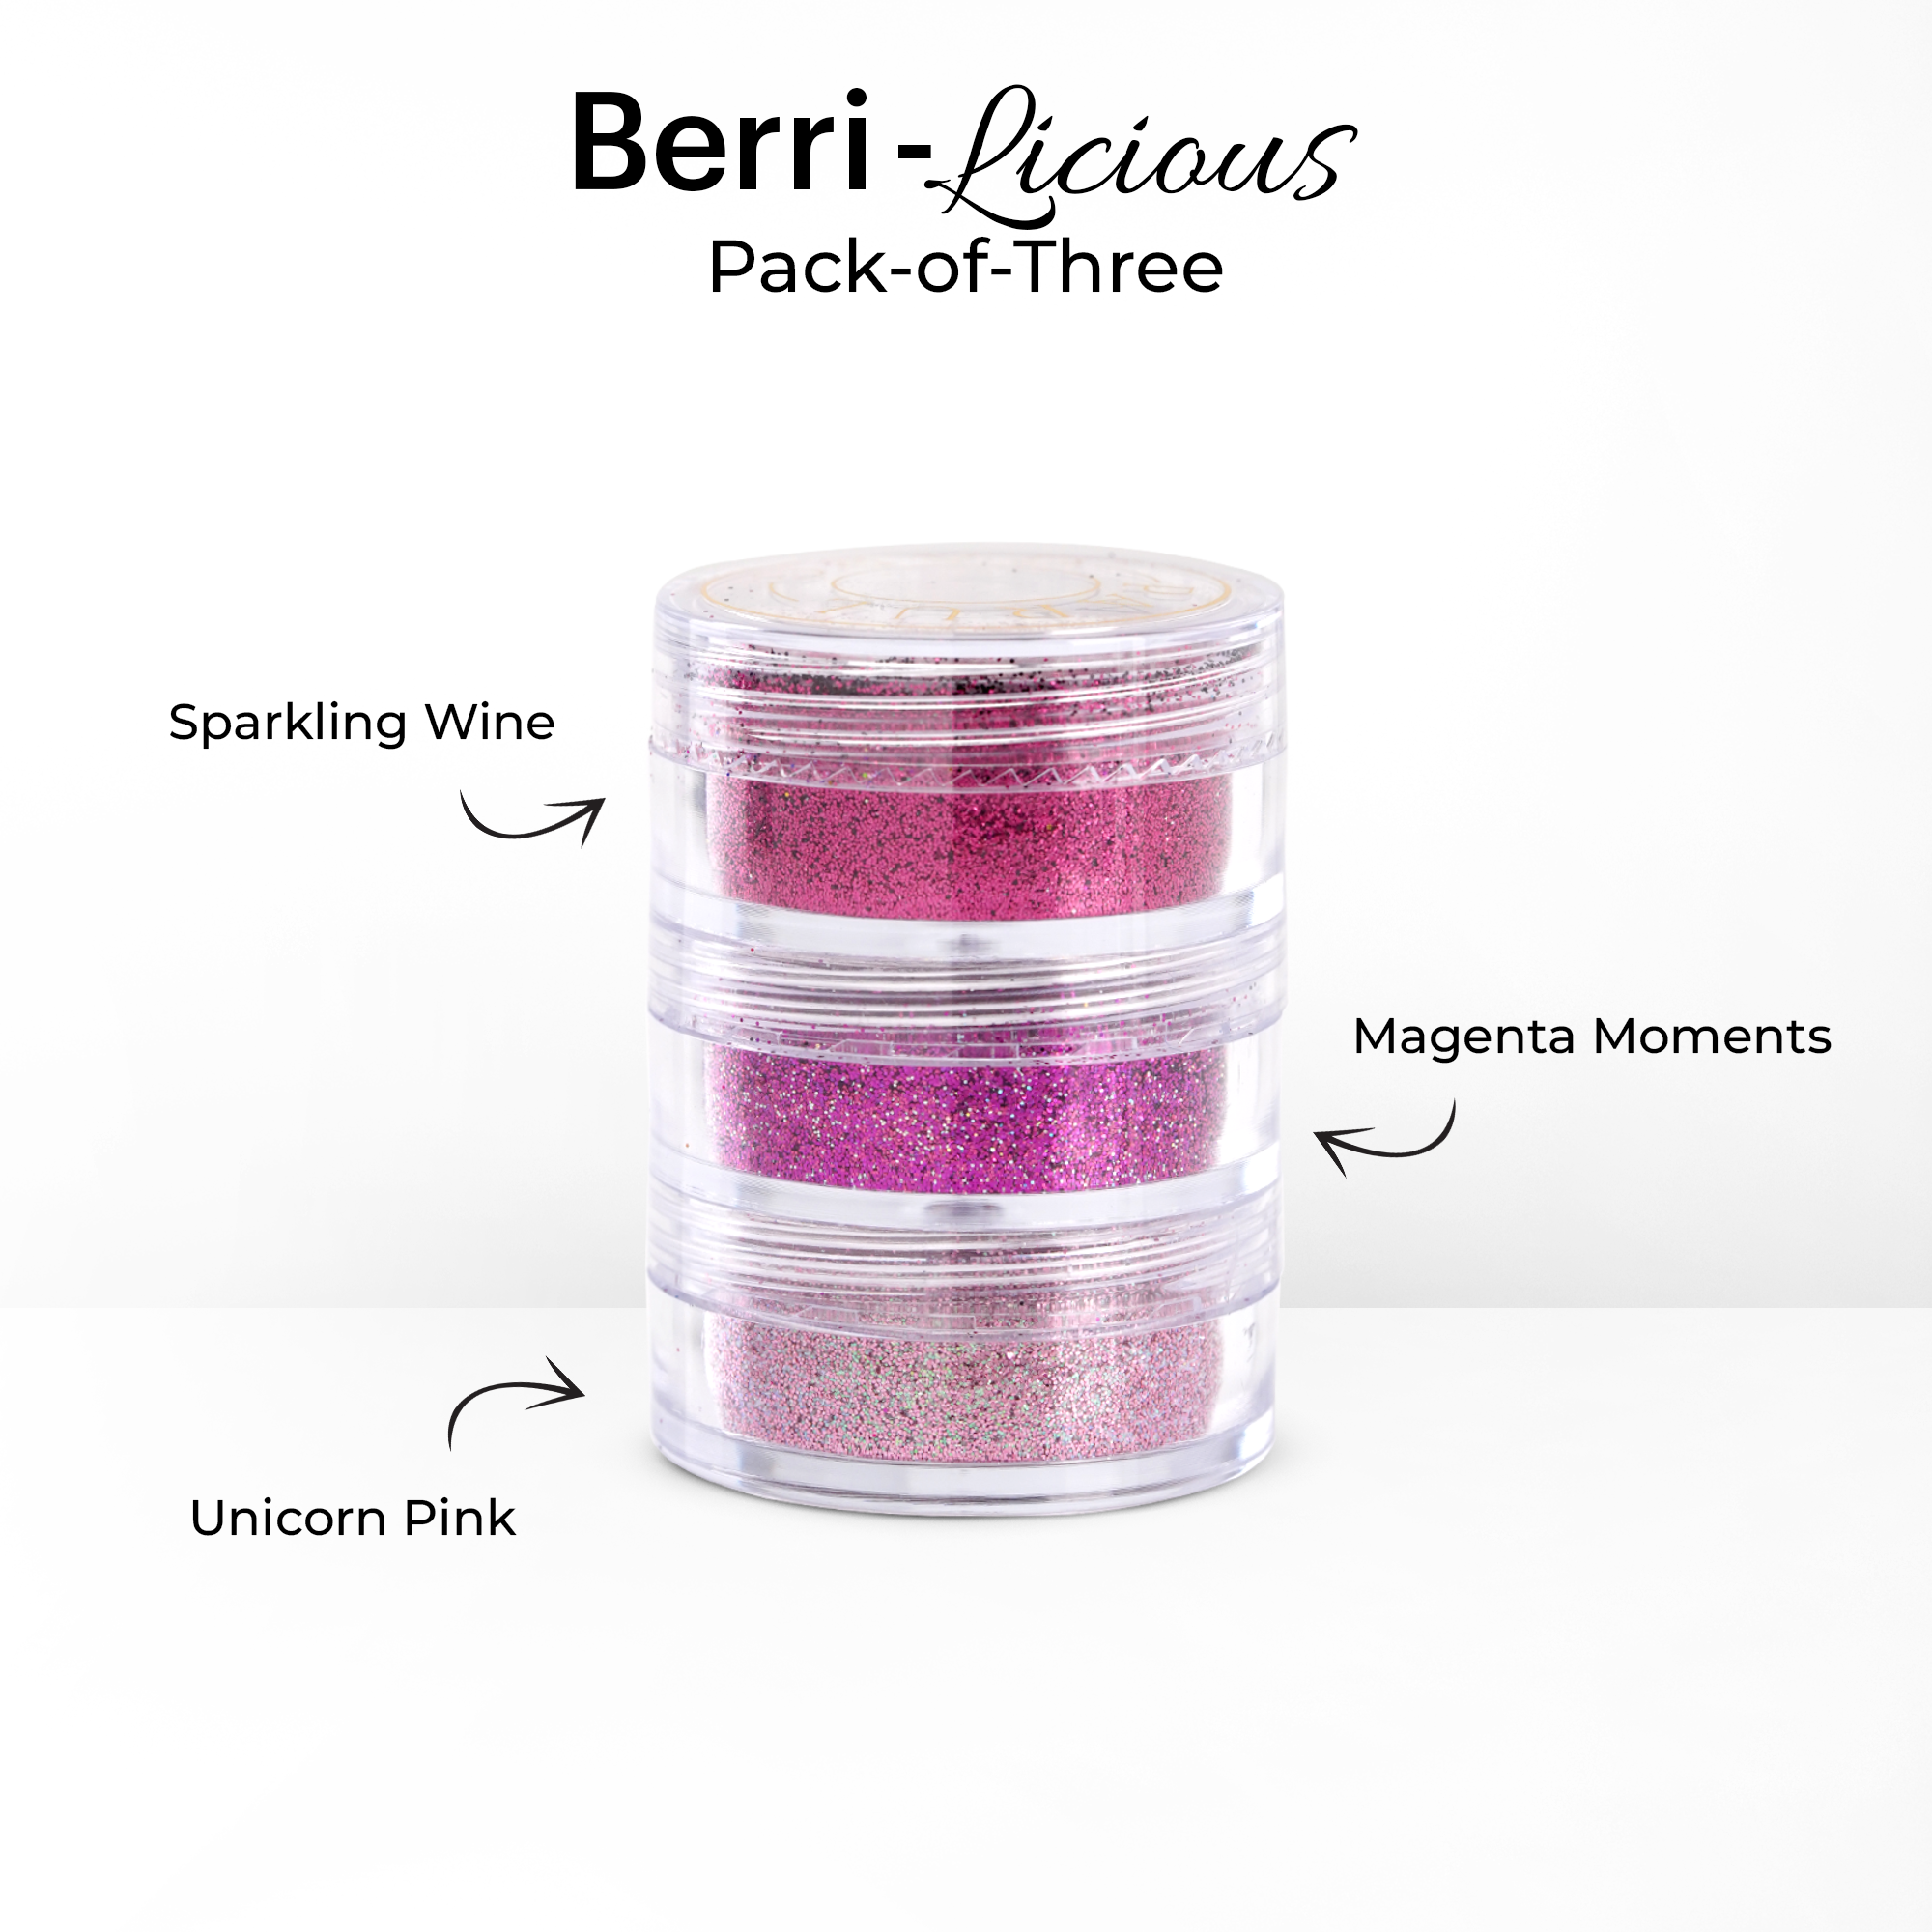 Berri-licious Pack-of-Three Glitter Set